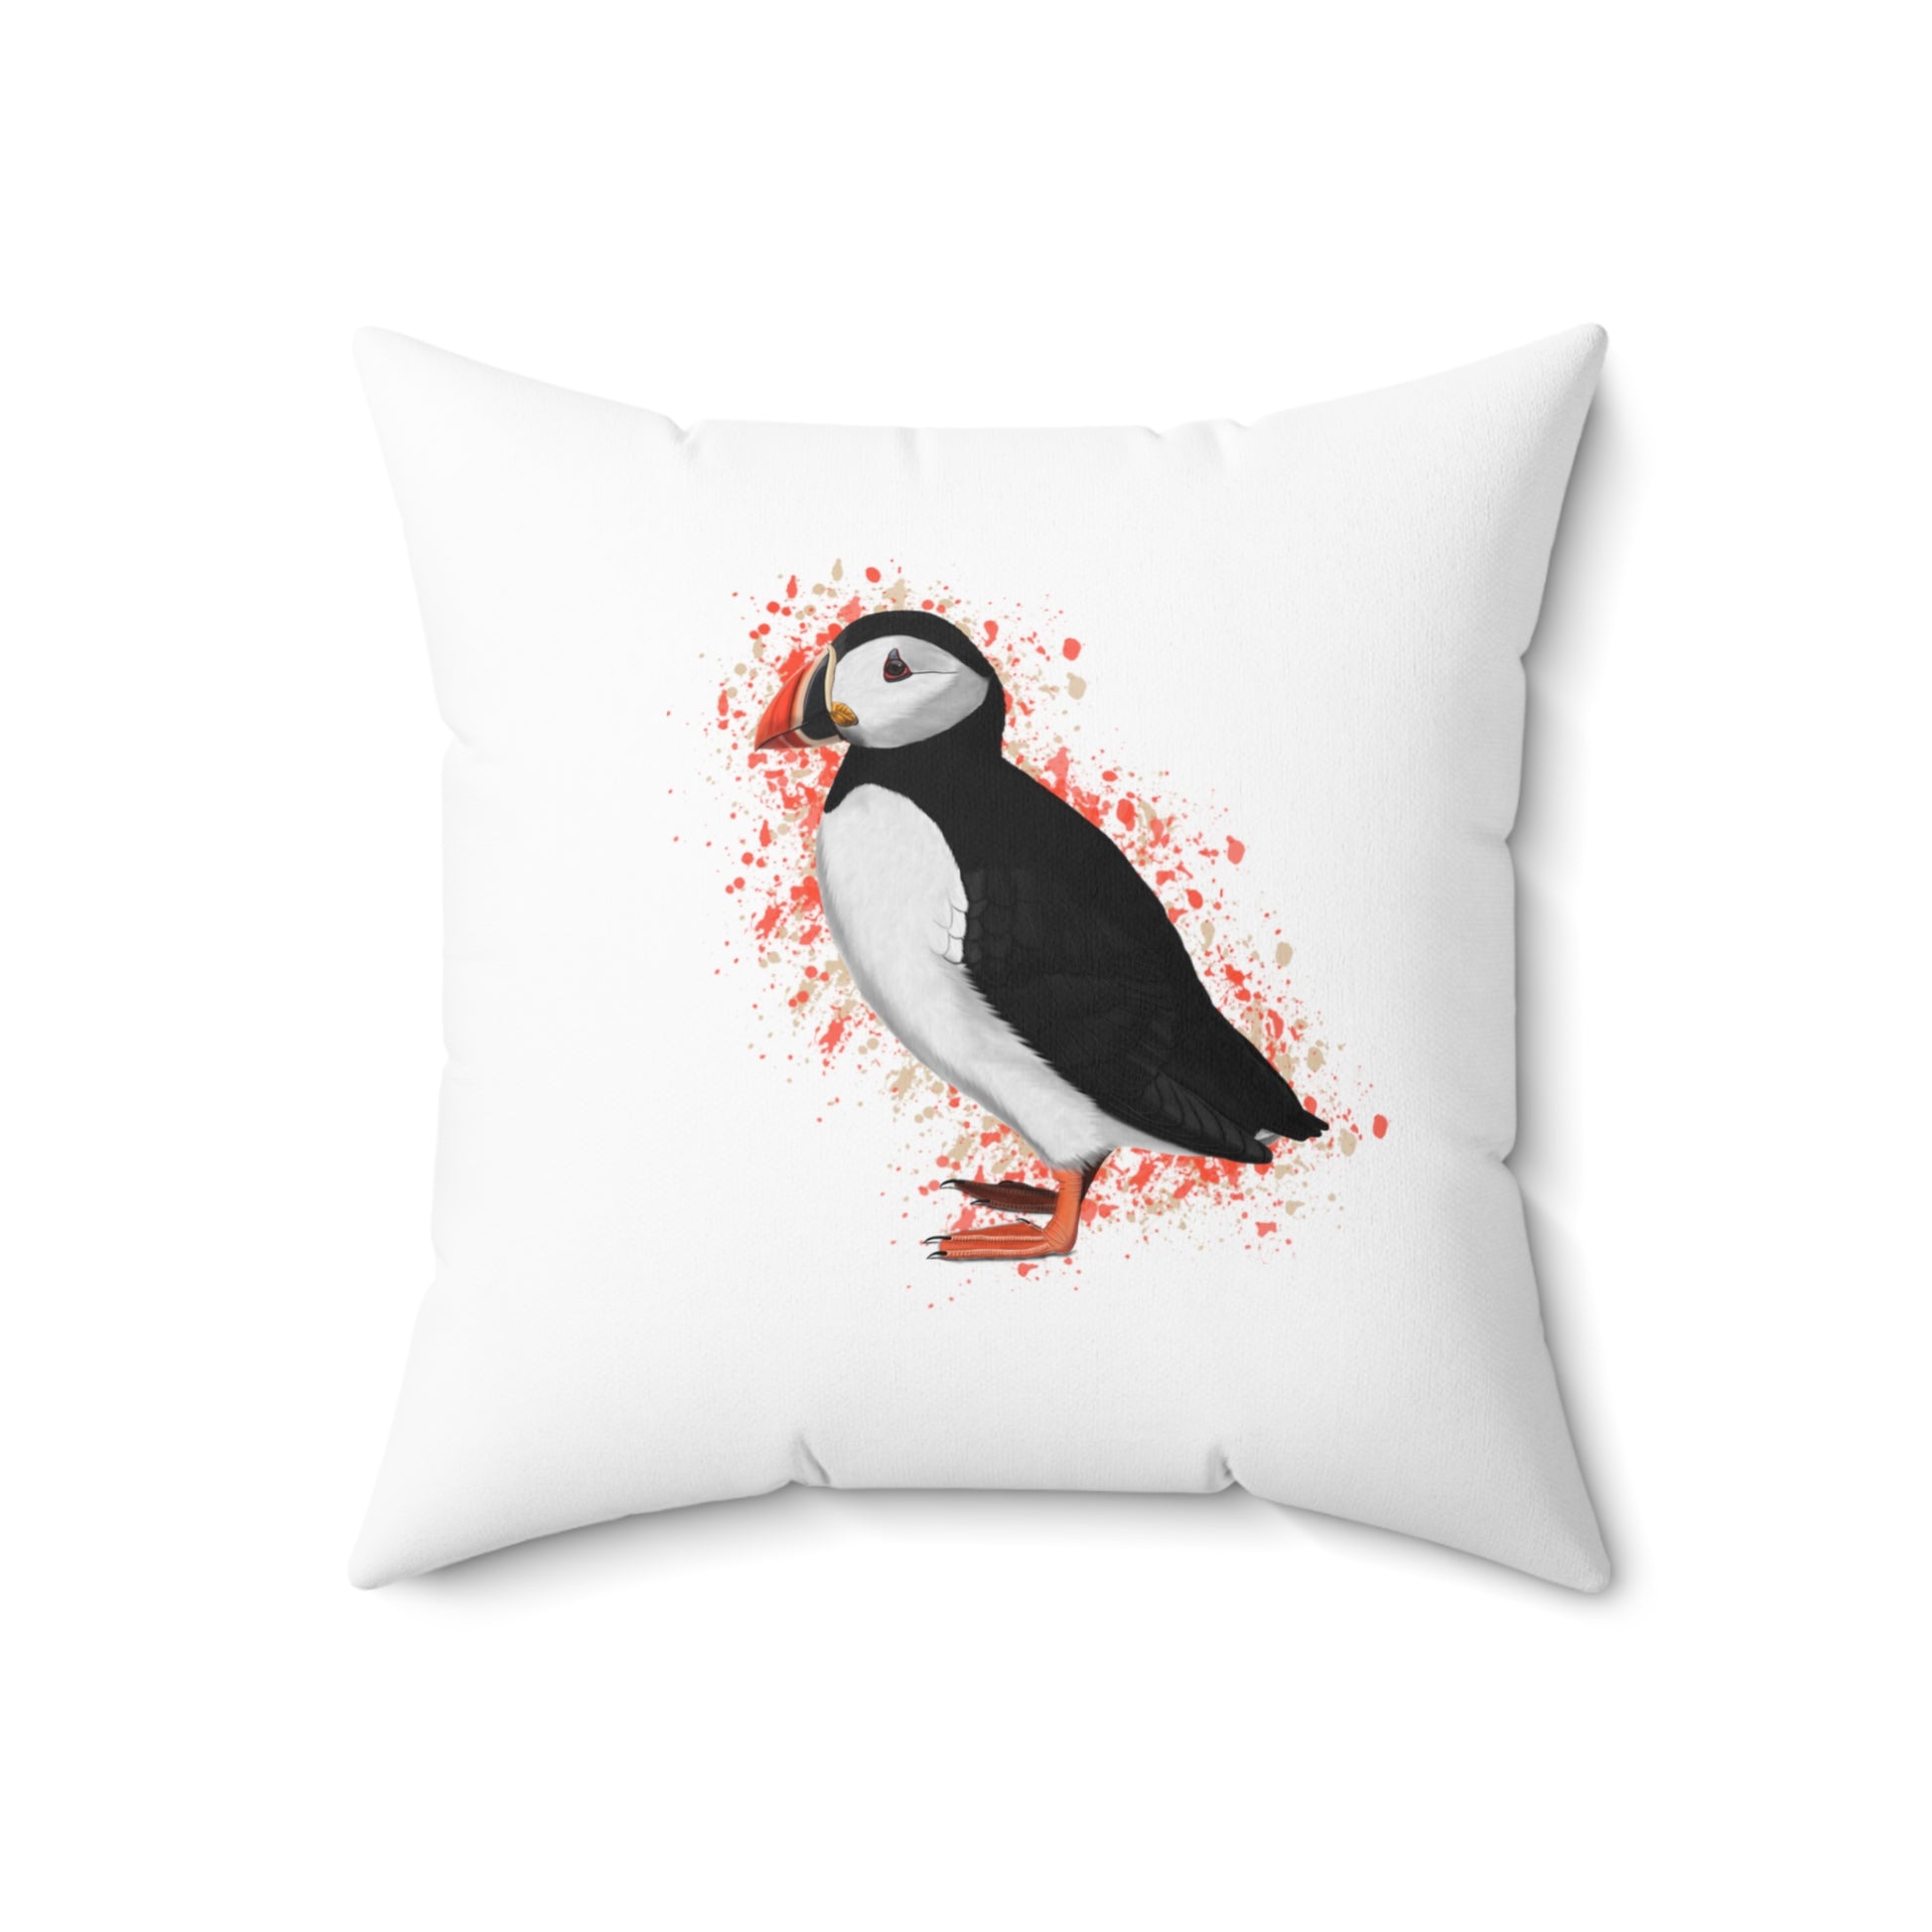 Puffin Bird Throw Pillow 18"x18" White